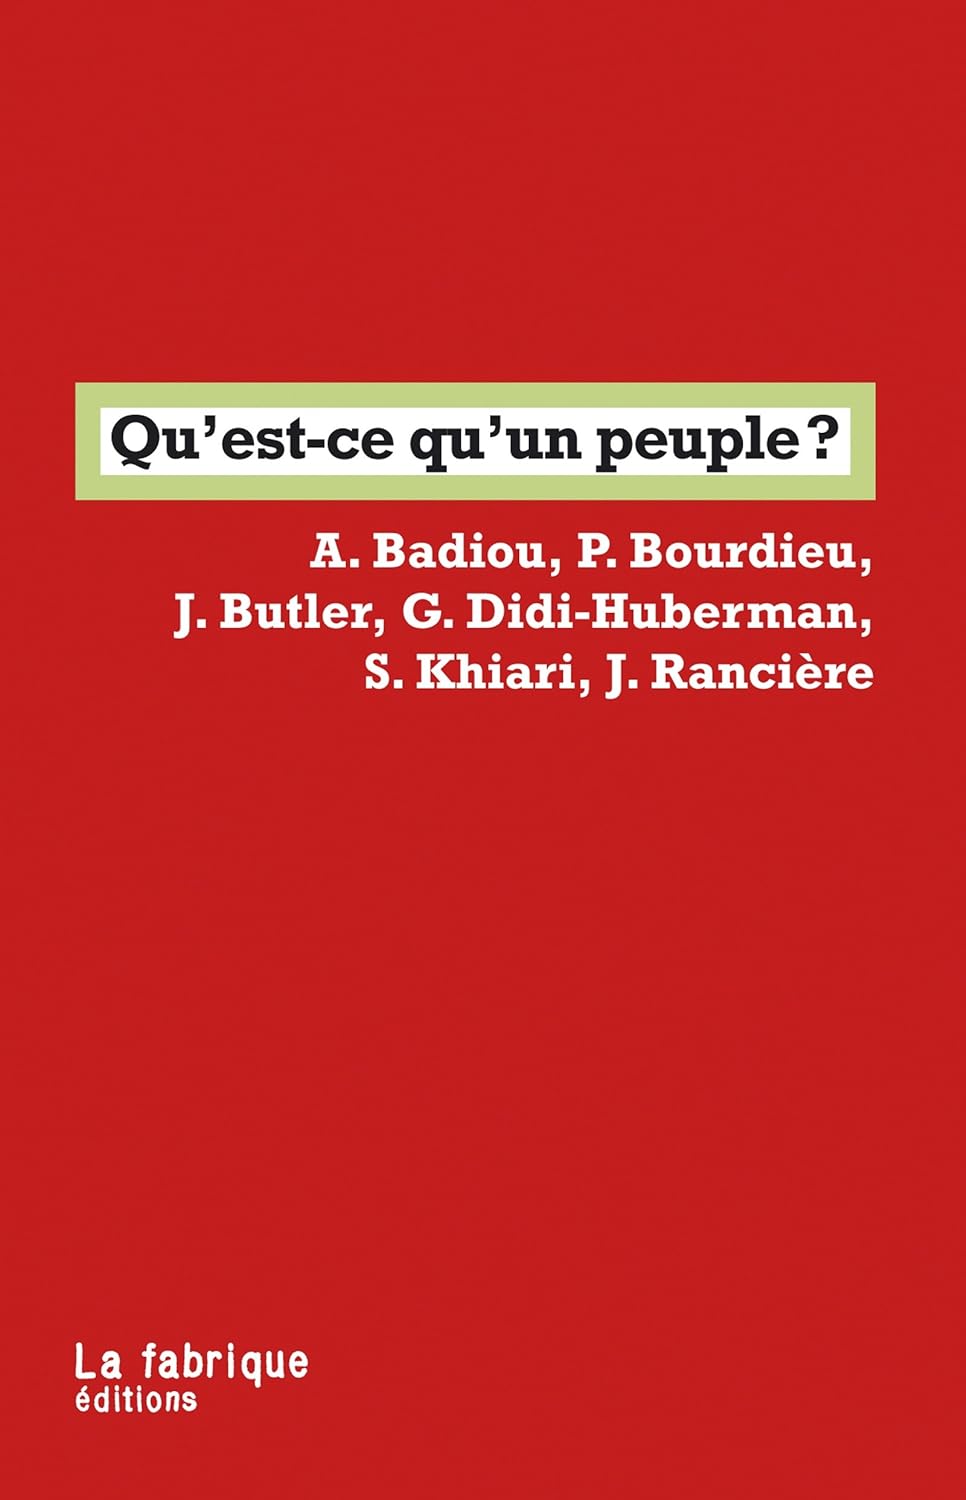 Alain Badiou, Judith Butler, Jacques Rancière, Pierre Bourdieu, Georges Didi-Huberman, Sadri Khiari: Qu'est-ce qu'un peuple ? (Paperback, Français language, 2013, La Fabrique)